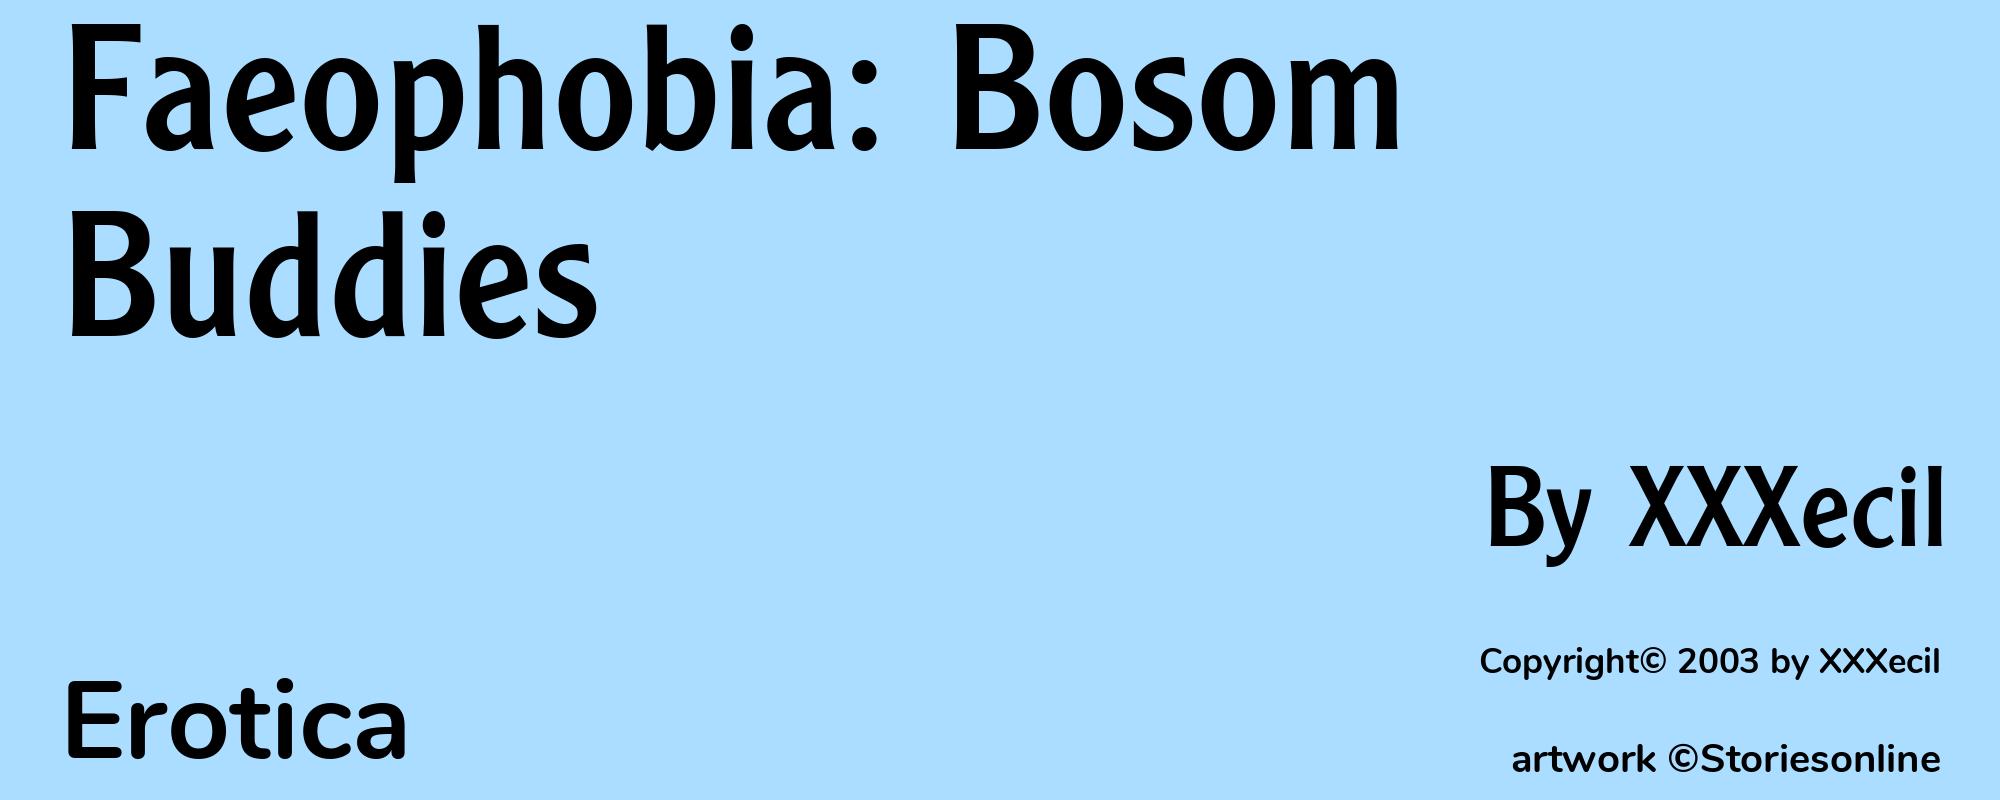 Faeophobia: Bosom Buddies - Cover